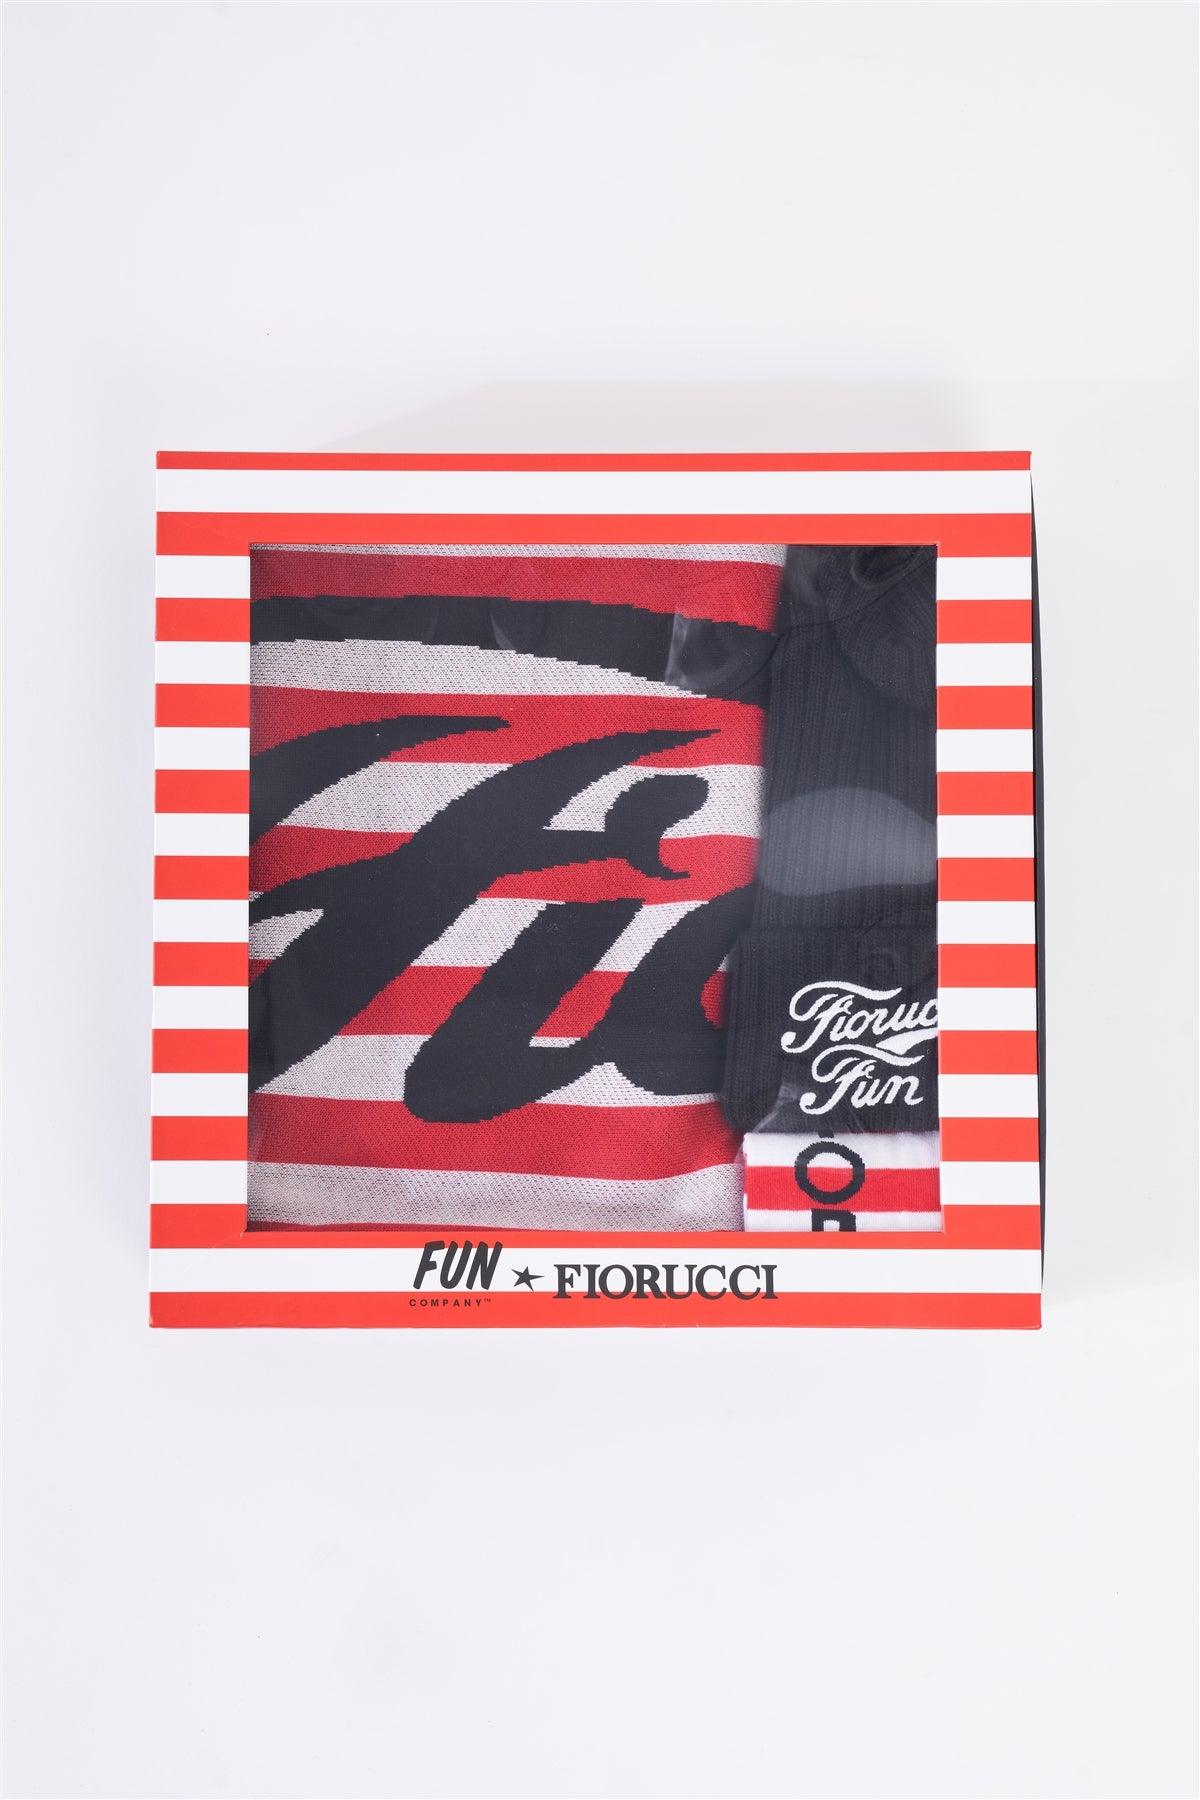 Fiorucci Fun "Keep Warm" Black & Red Three Piece Set Gift Box / 1 Box